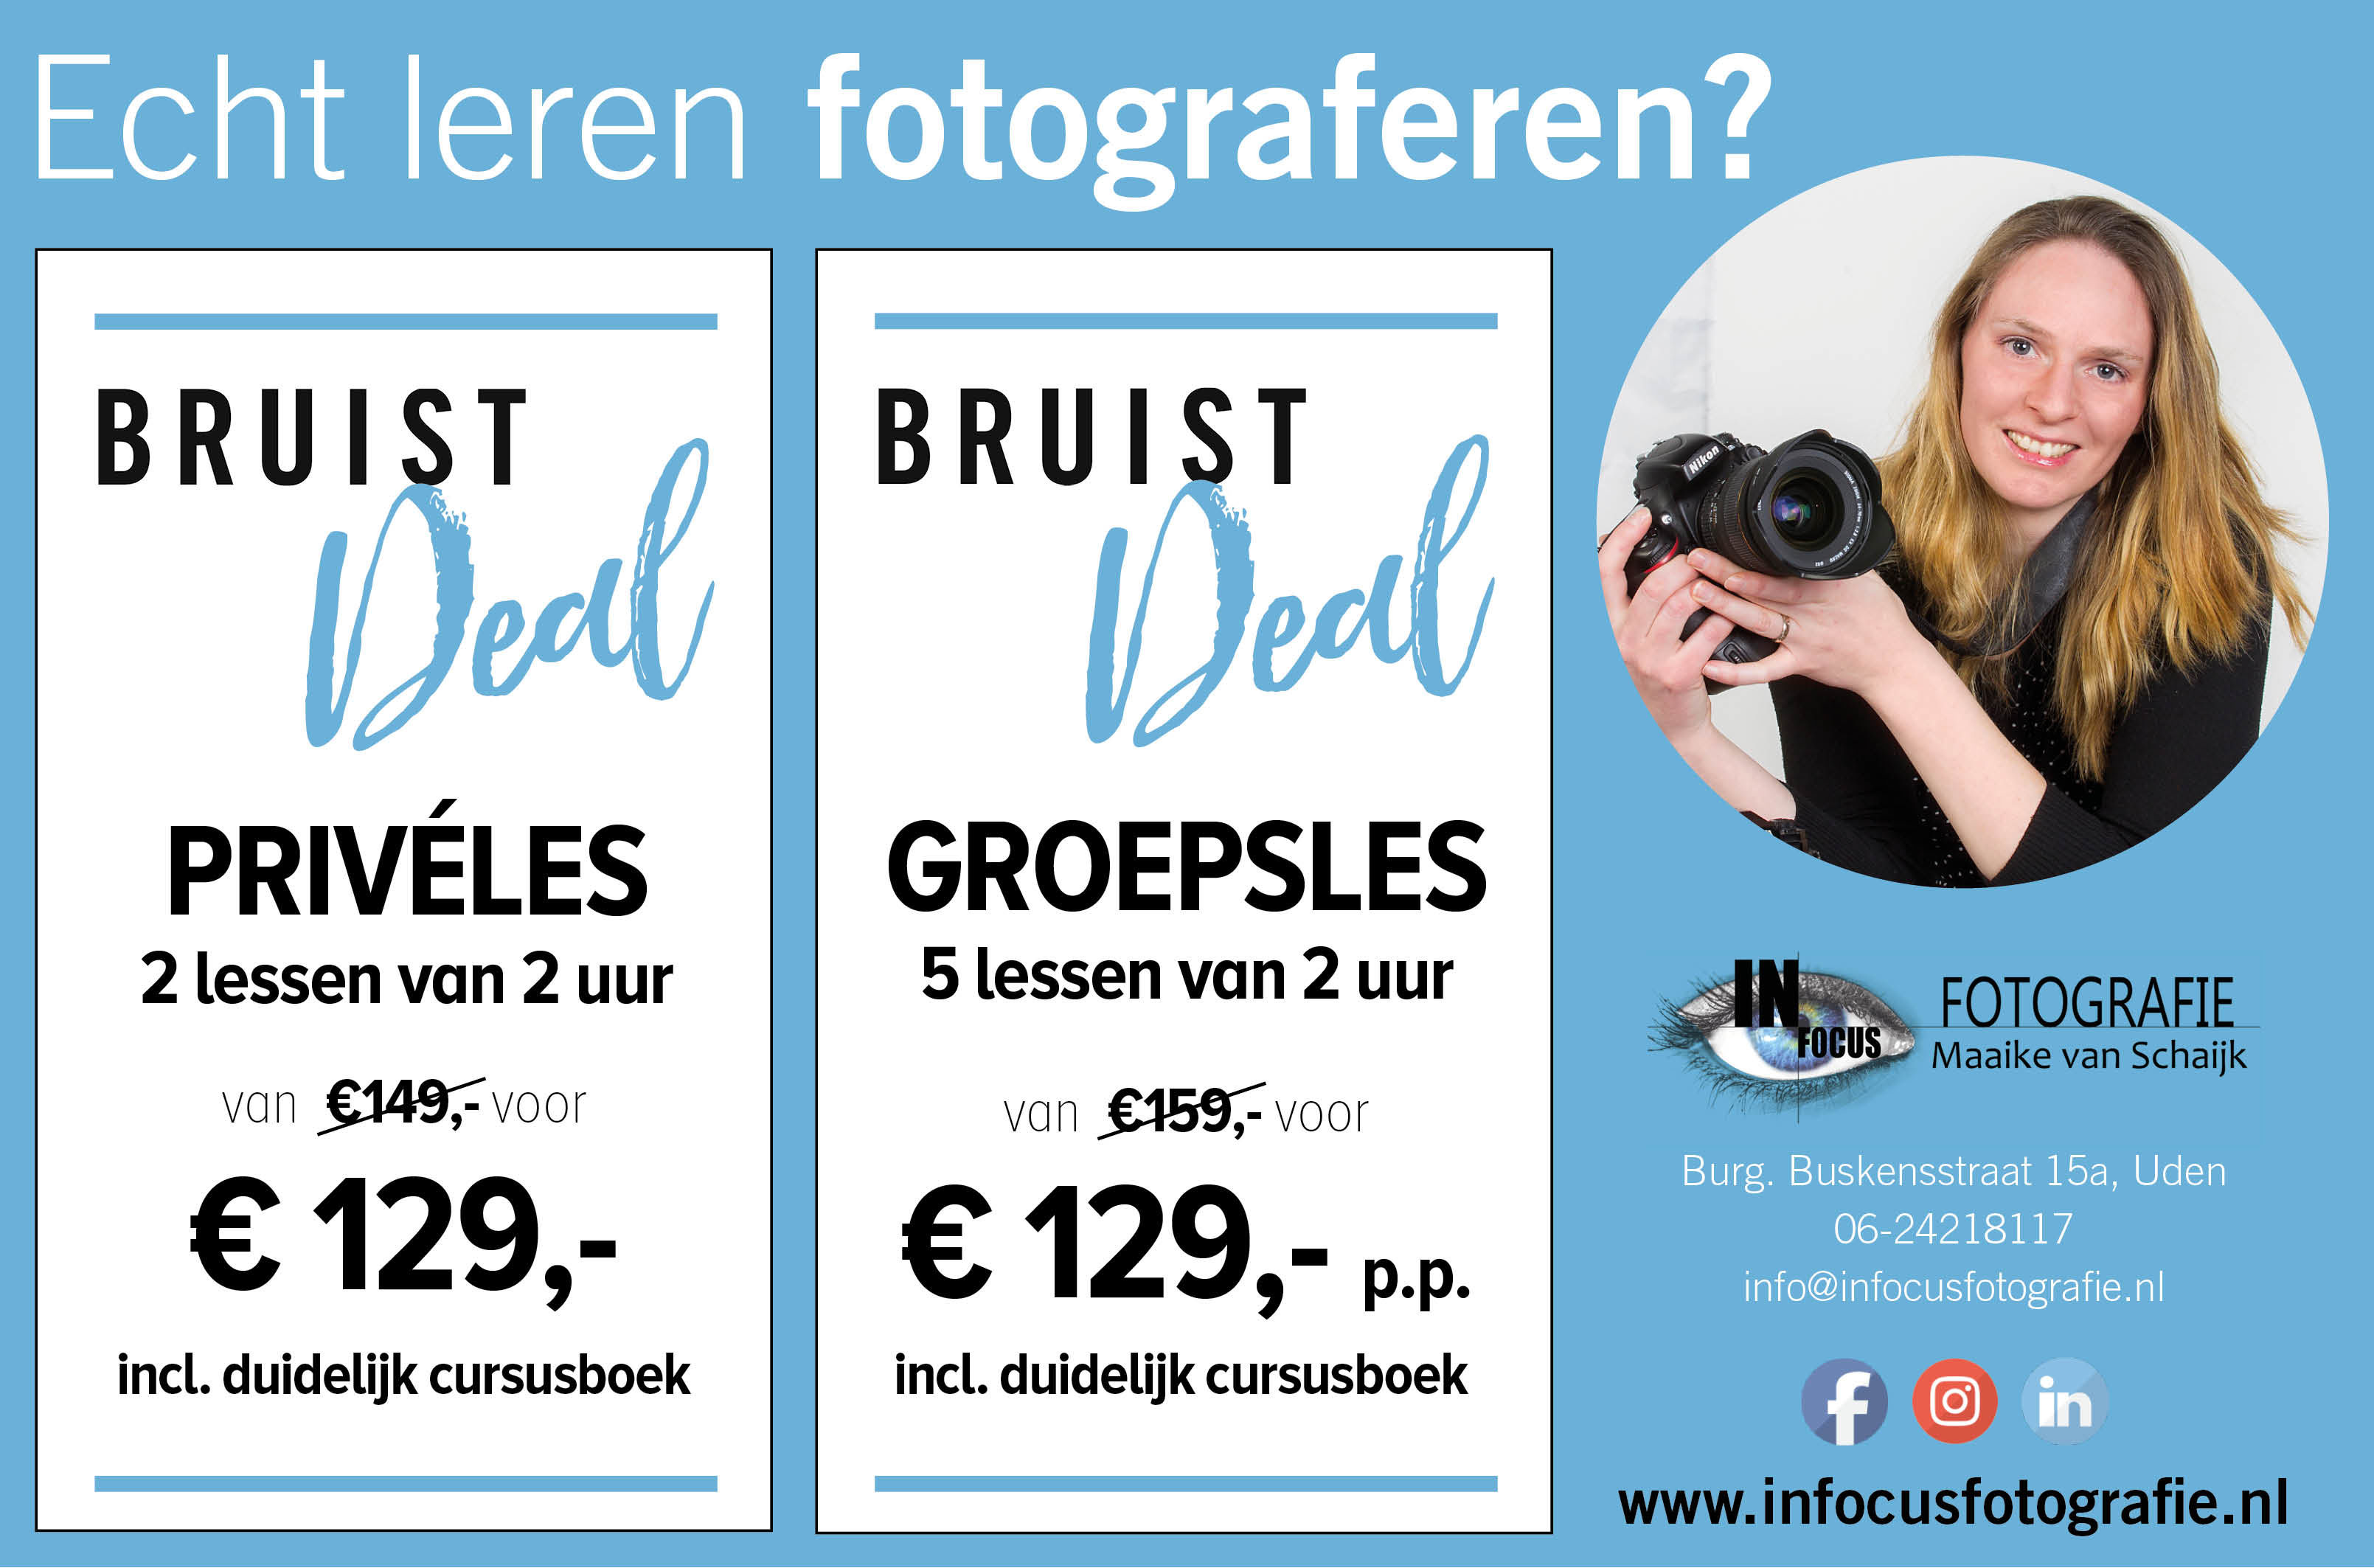 Echt leren fotograferen? Profiteer nu van mooie kortingen met deze Bruist Deal van Infocus Fotografie